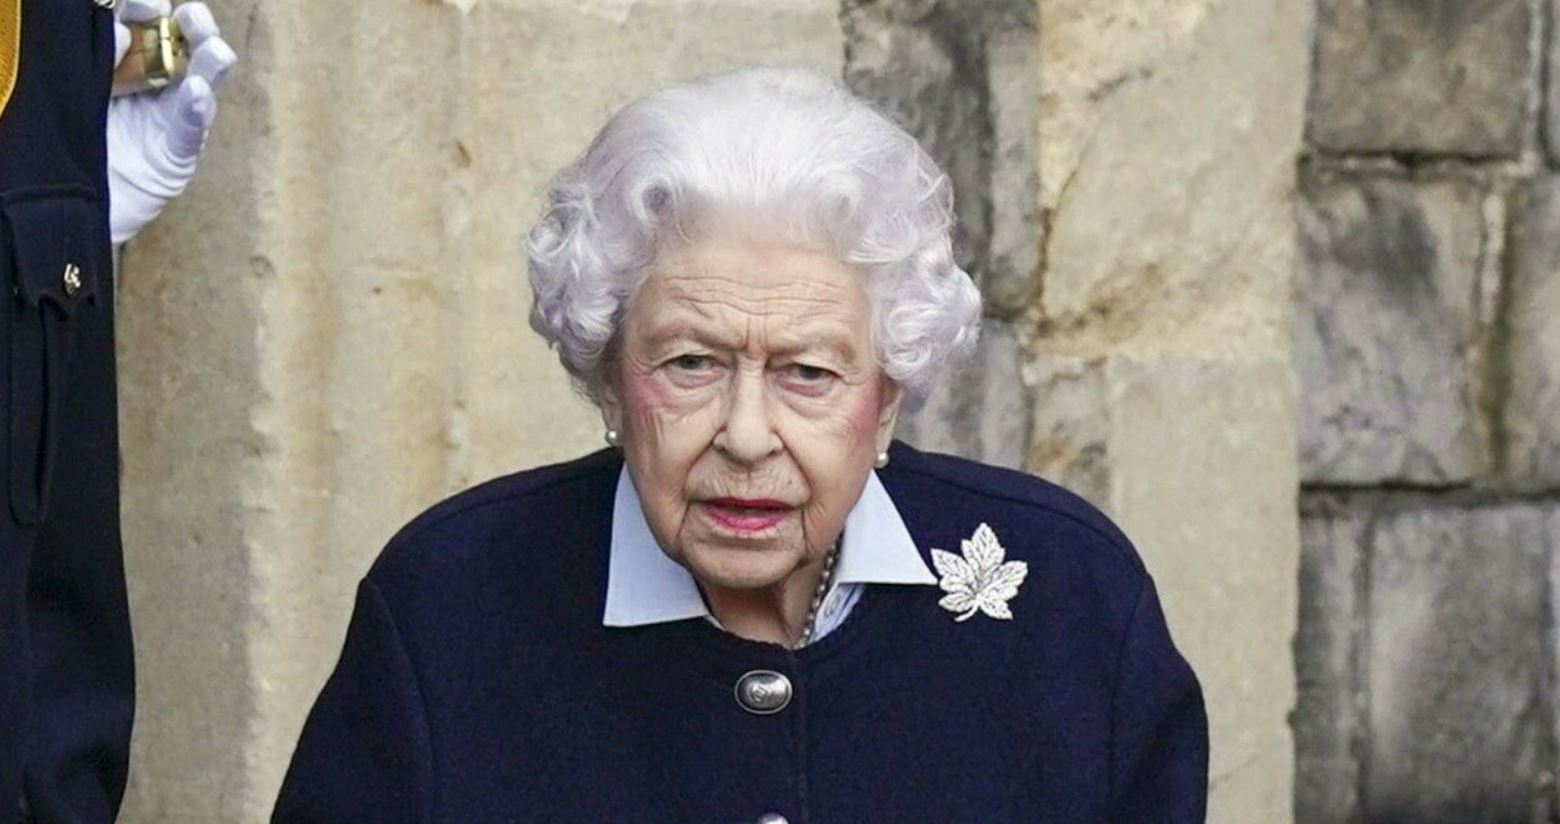     La reine Elizabeth II est décédée à l'âge de 96 ans 

